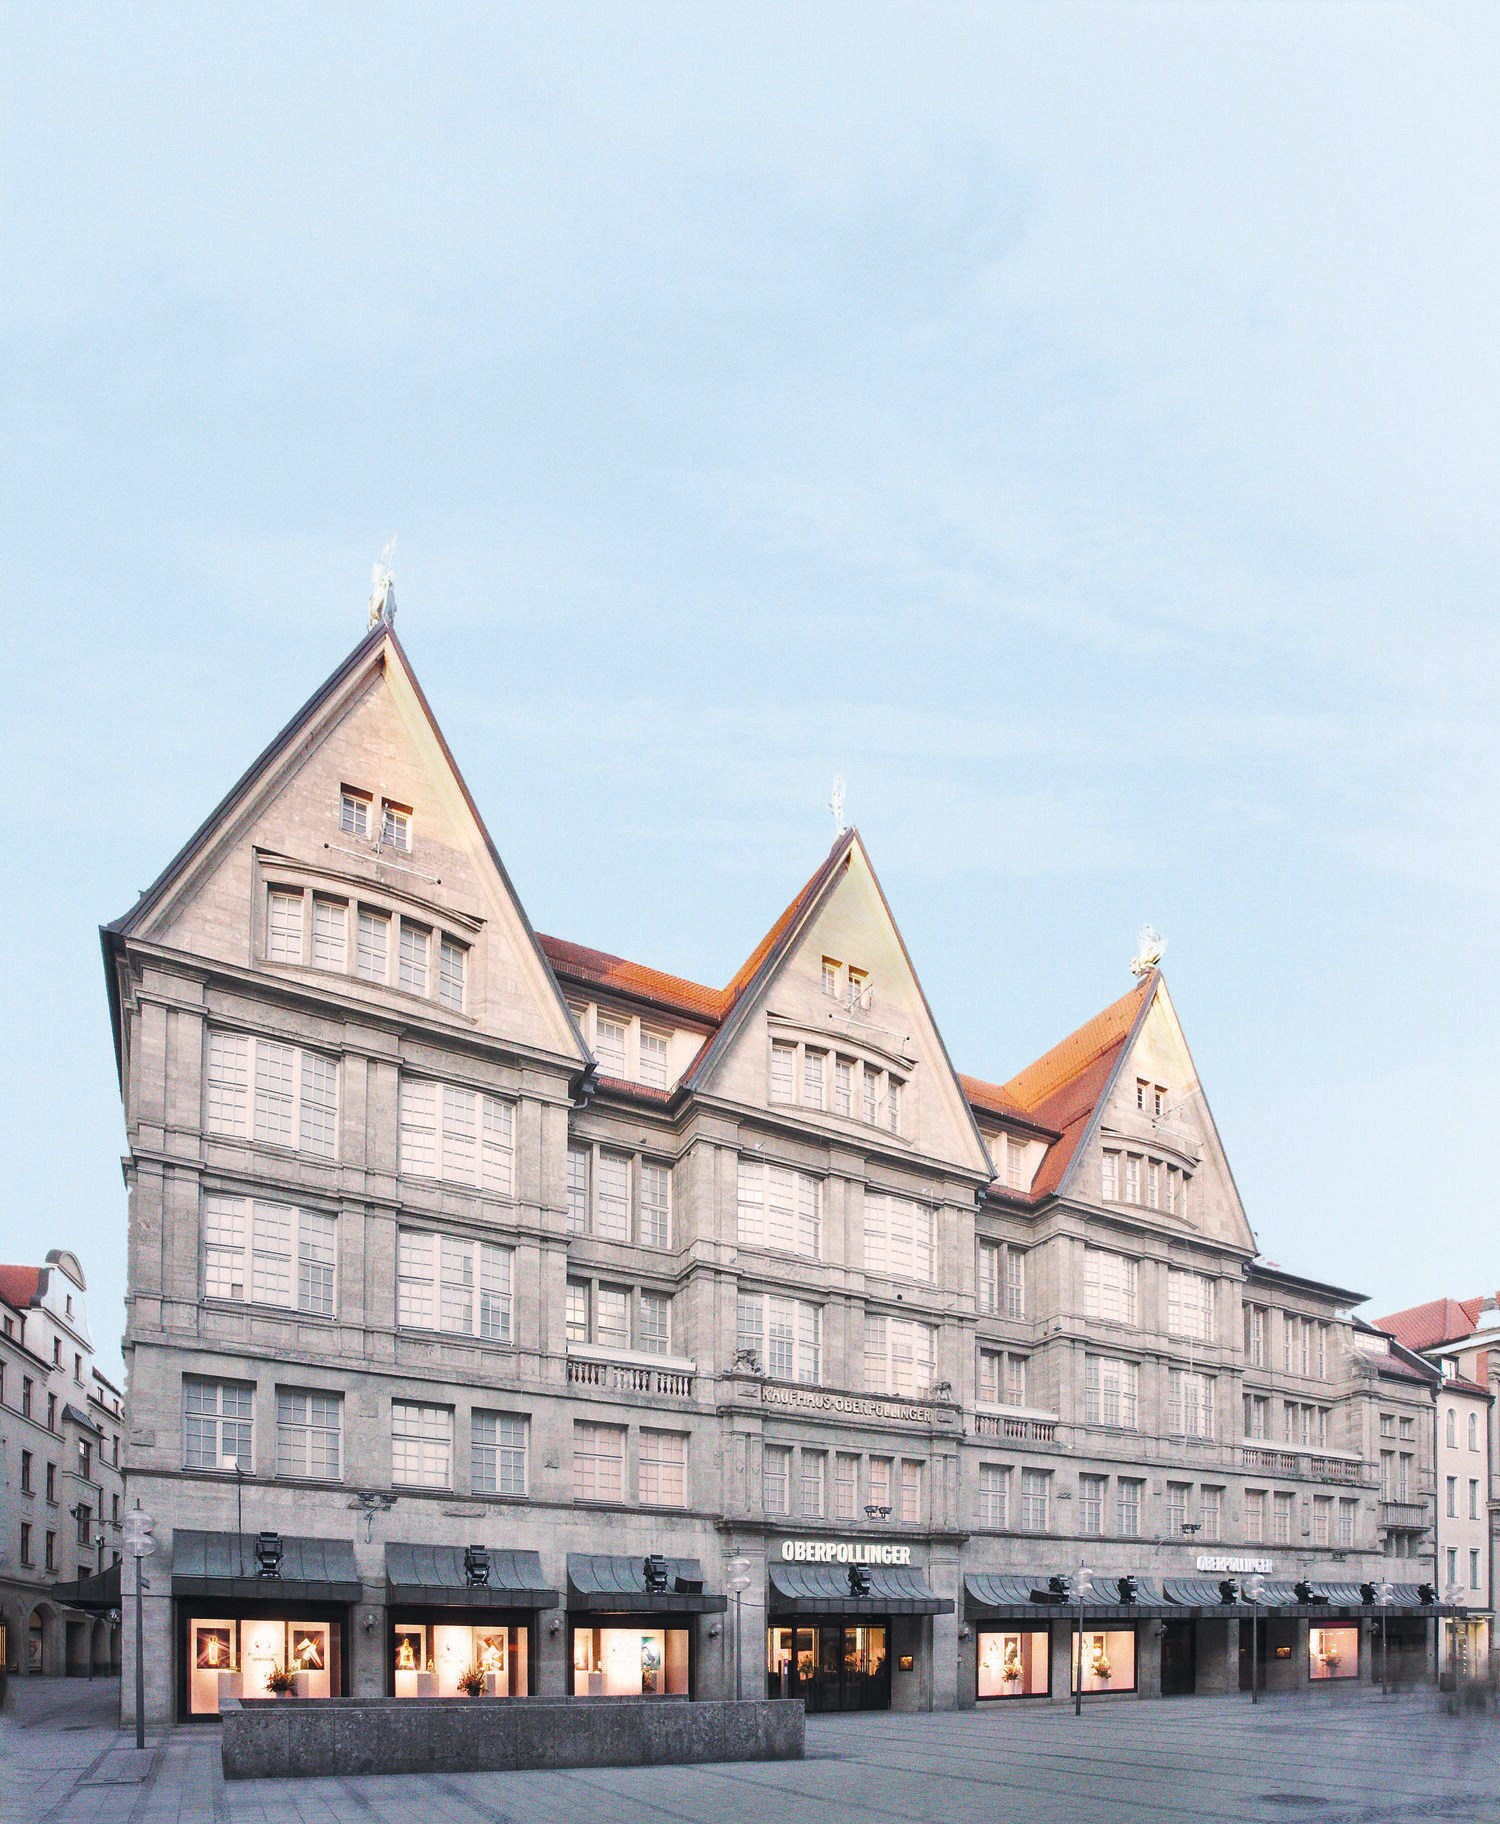 Außenansicht des Kaufhauses Oberpollinger in München